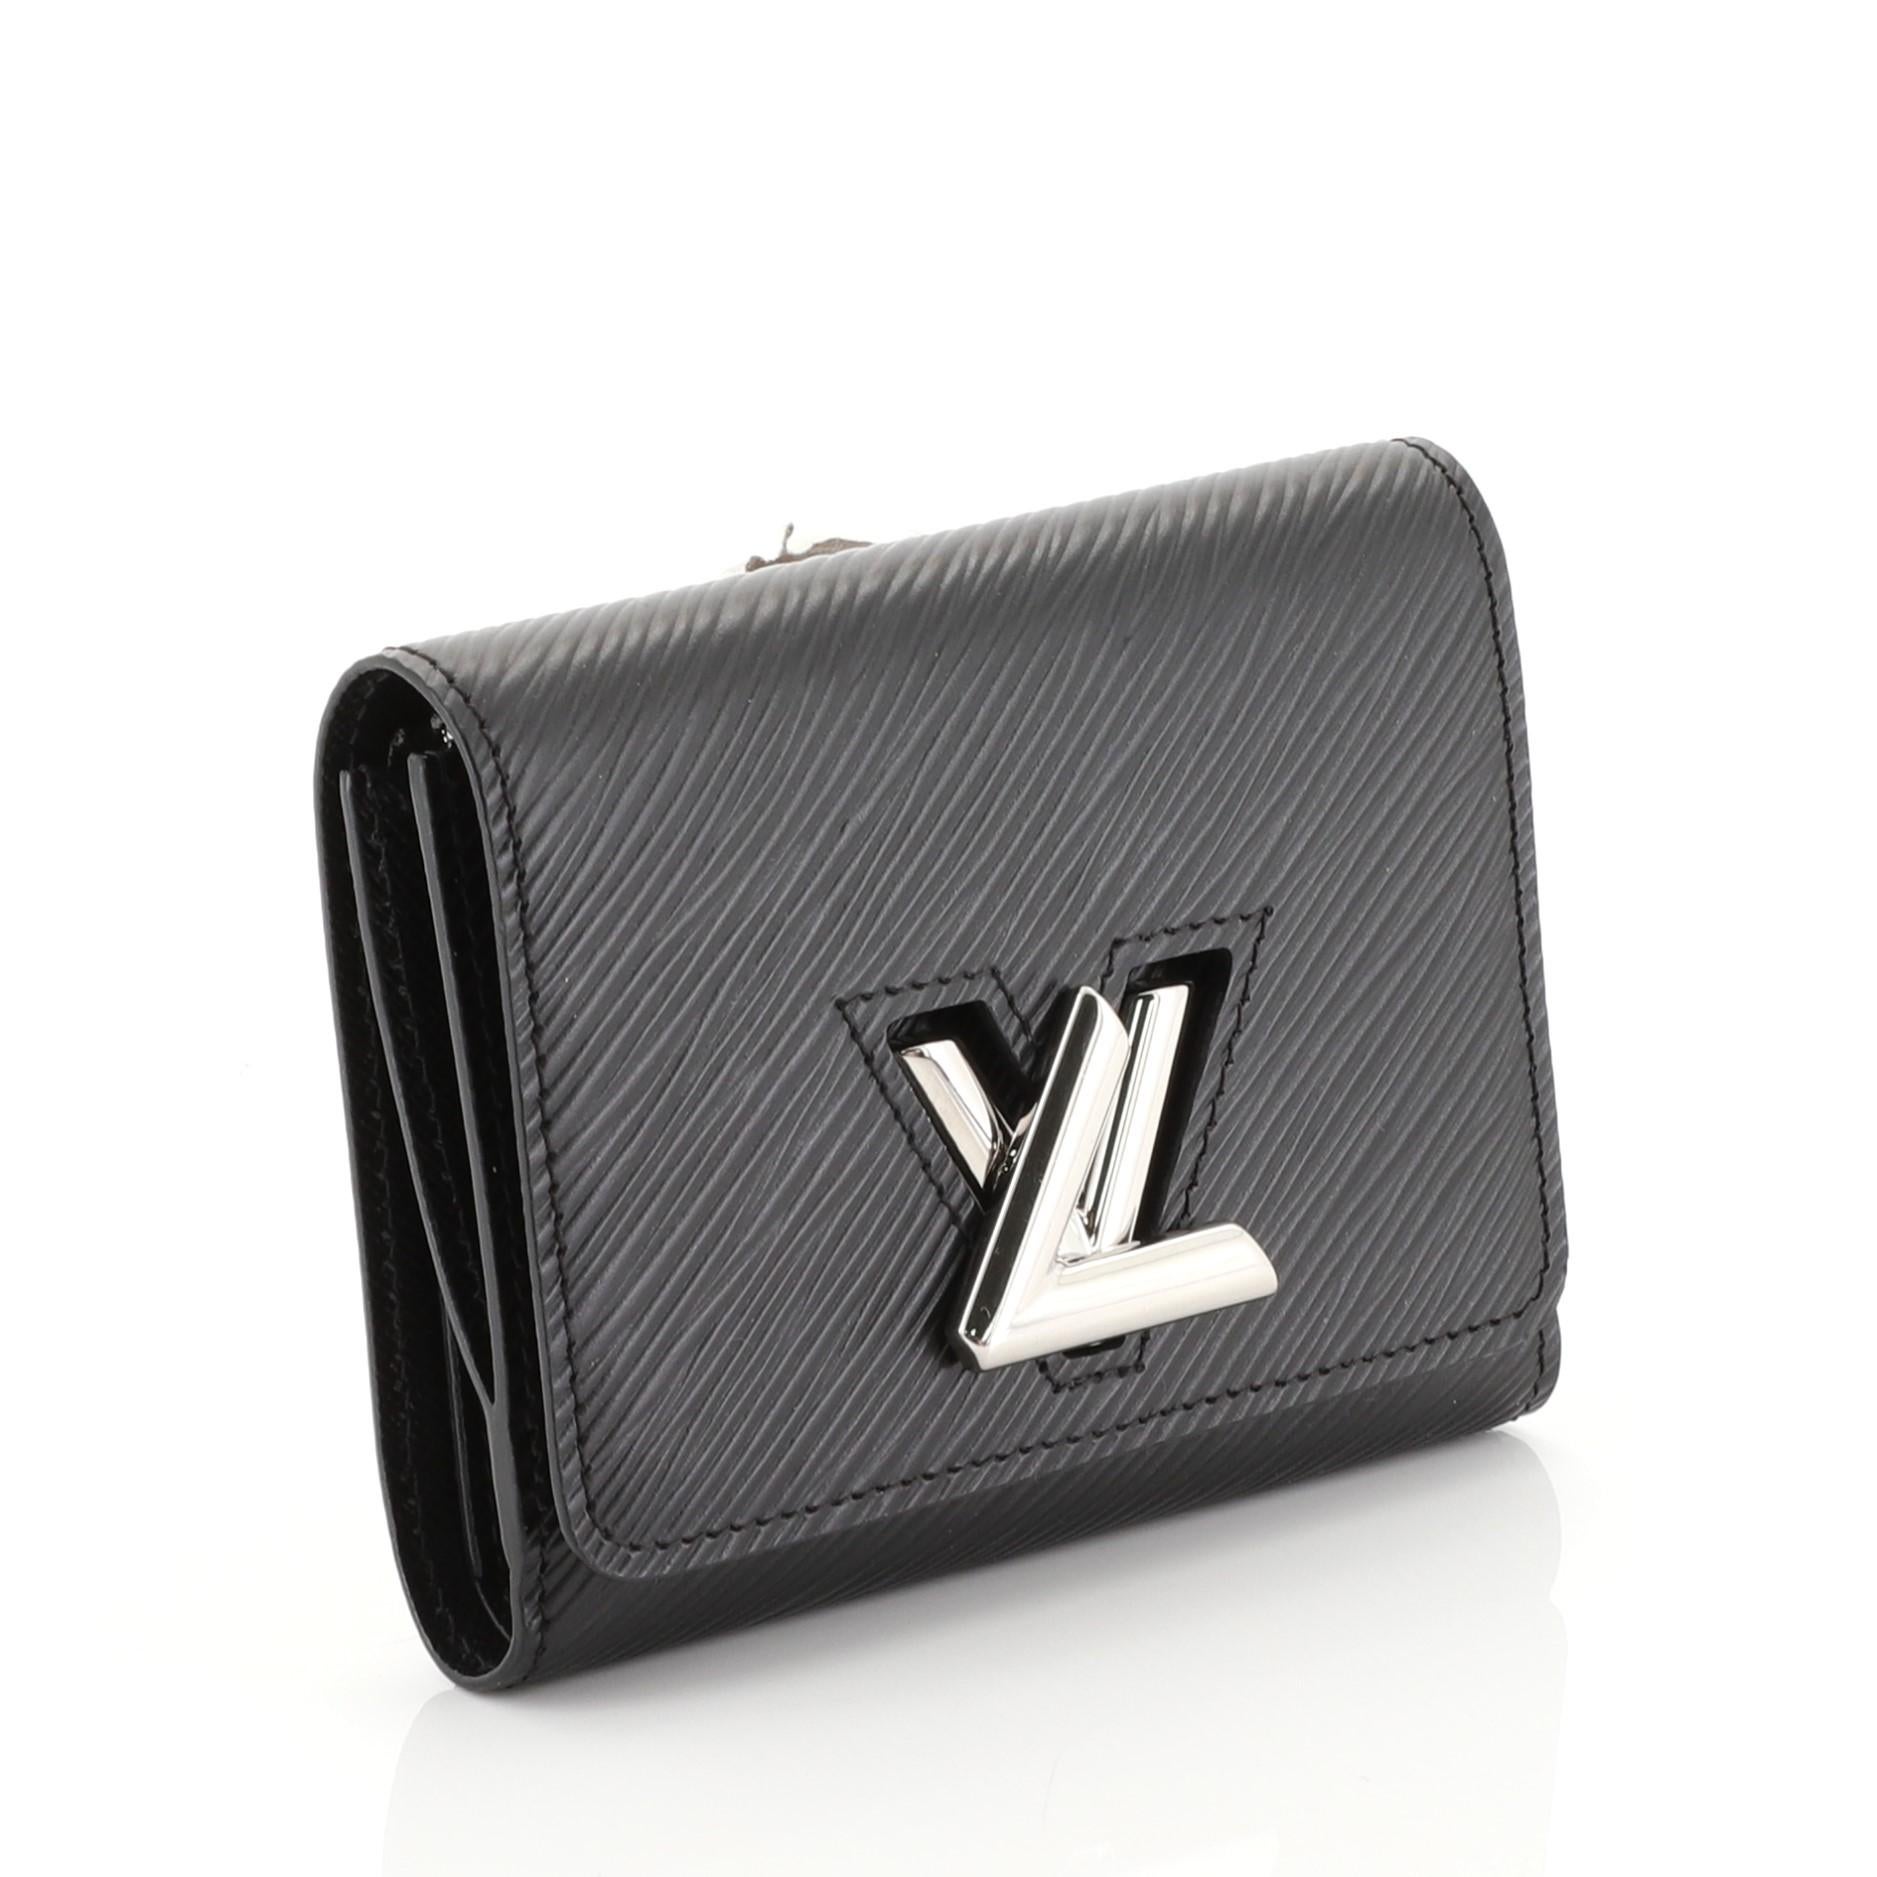 Black Louis Vuitton Twist Wallet Epi Leather Compact